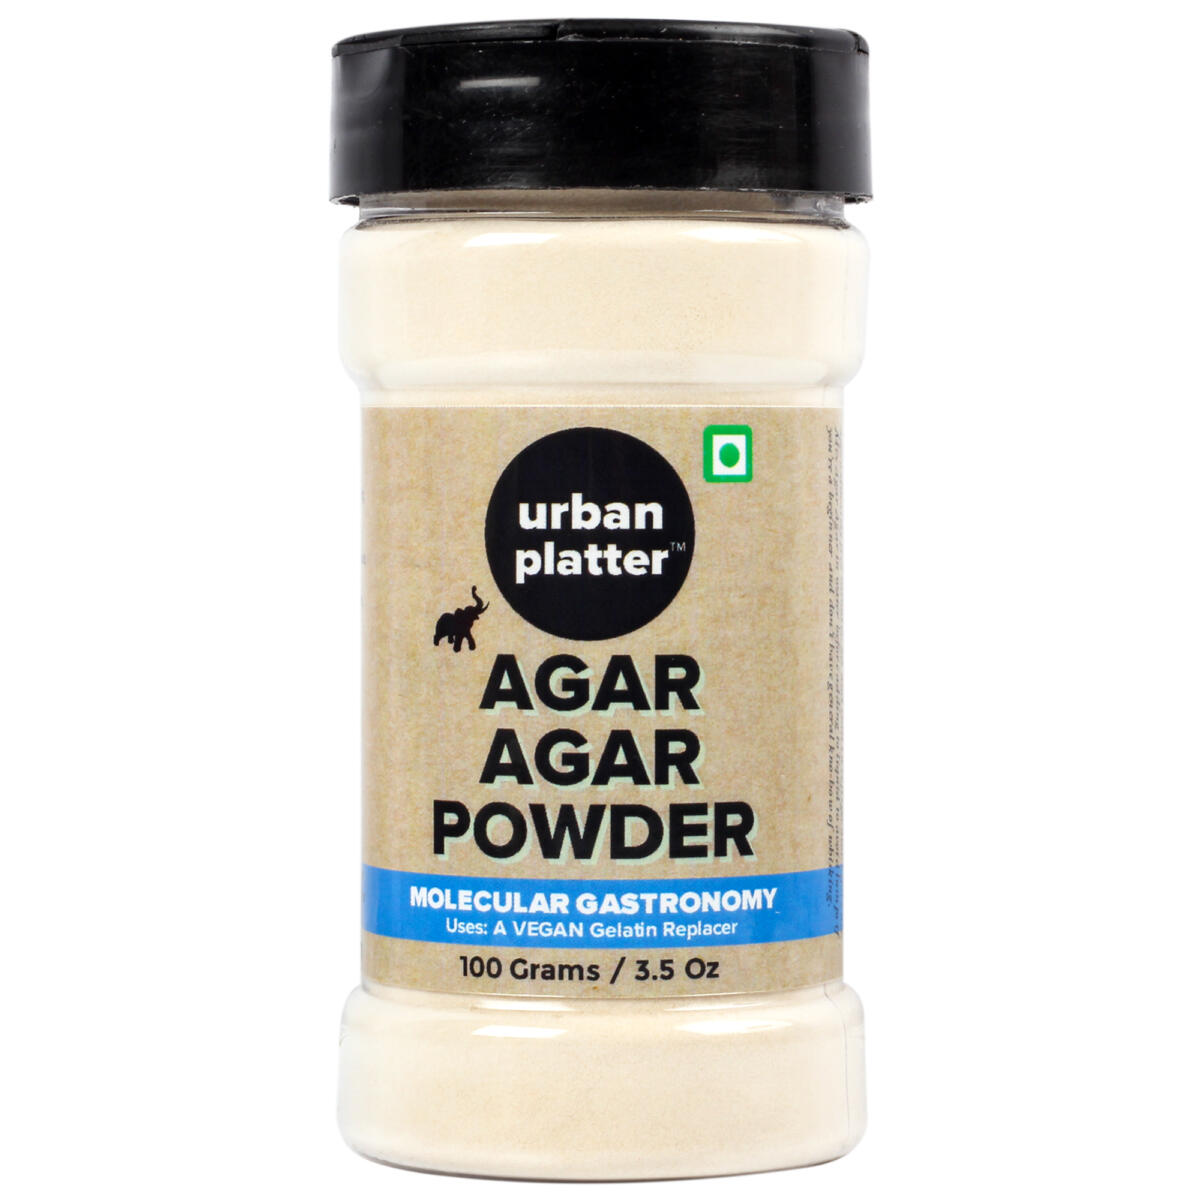 agar agar powder substitute